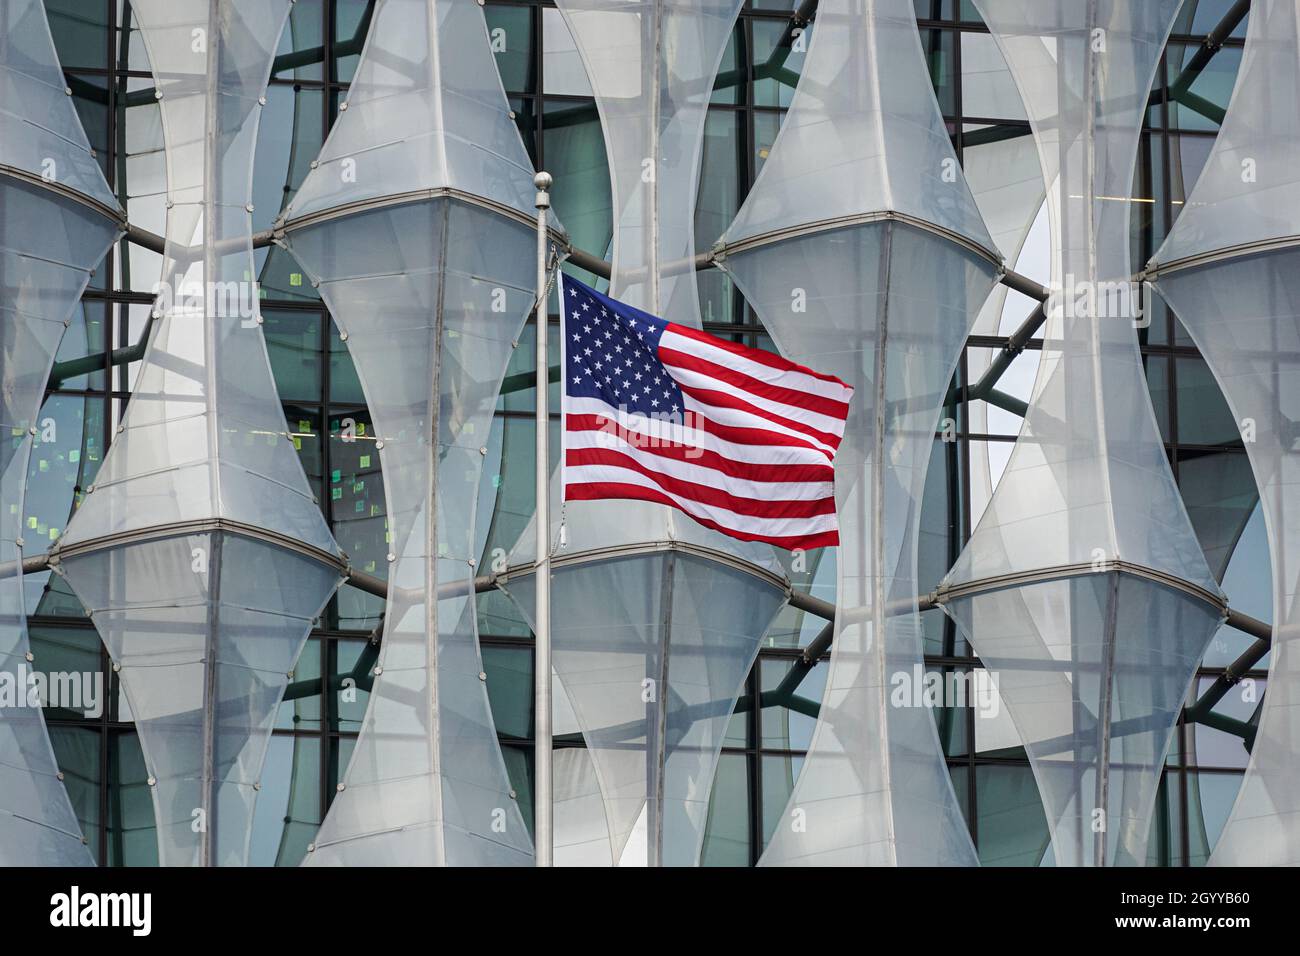 Drapeau américain à l'ambassade des États-Unis d'Amérique à neuf Elms, Londres Angleterre Royaume-Uni Banque D'Images